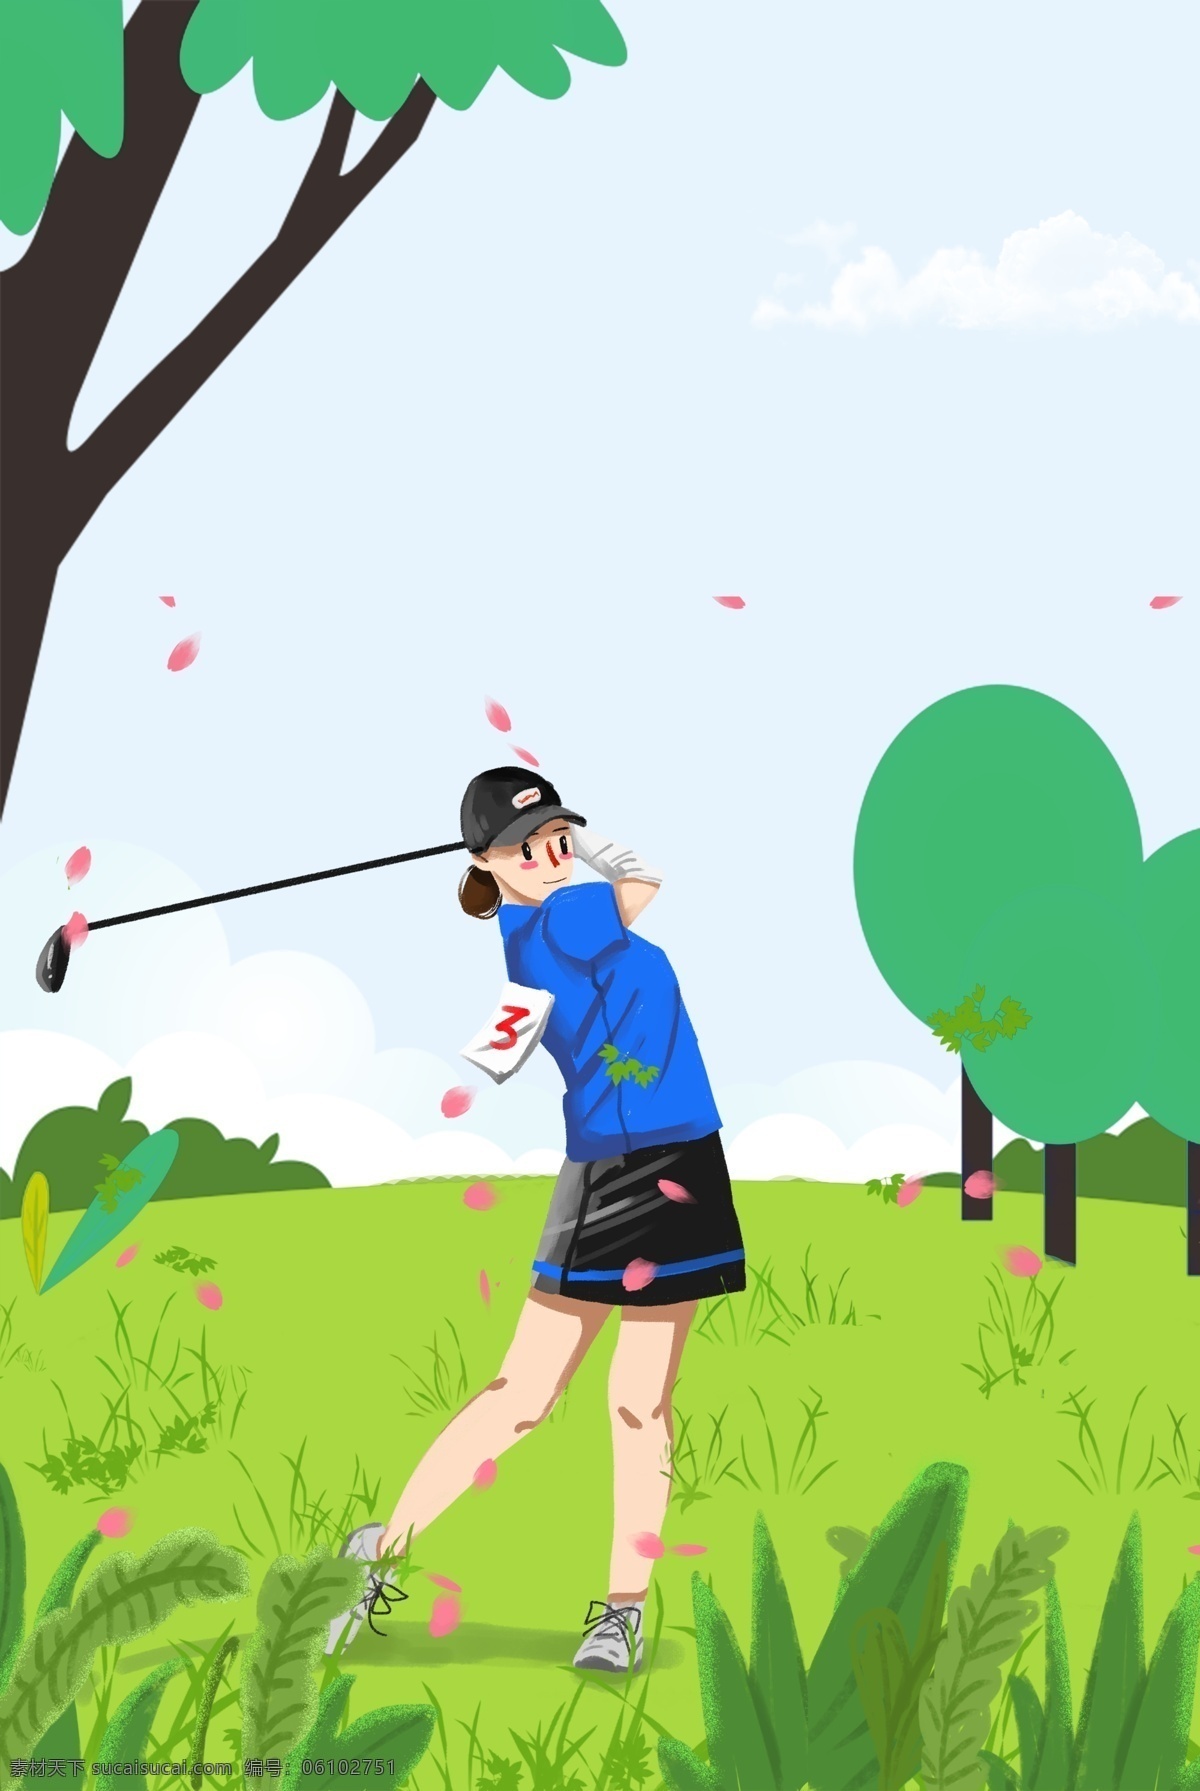 健康 高尔夫 运动 蓝色天空 背景 健身 草坪 树木 花瓣 云层 简约 手绘